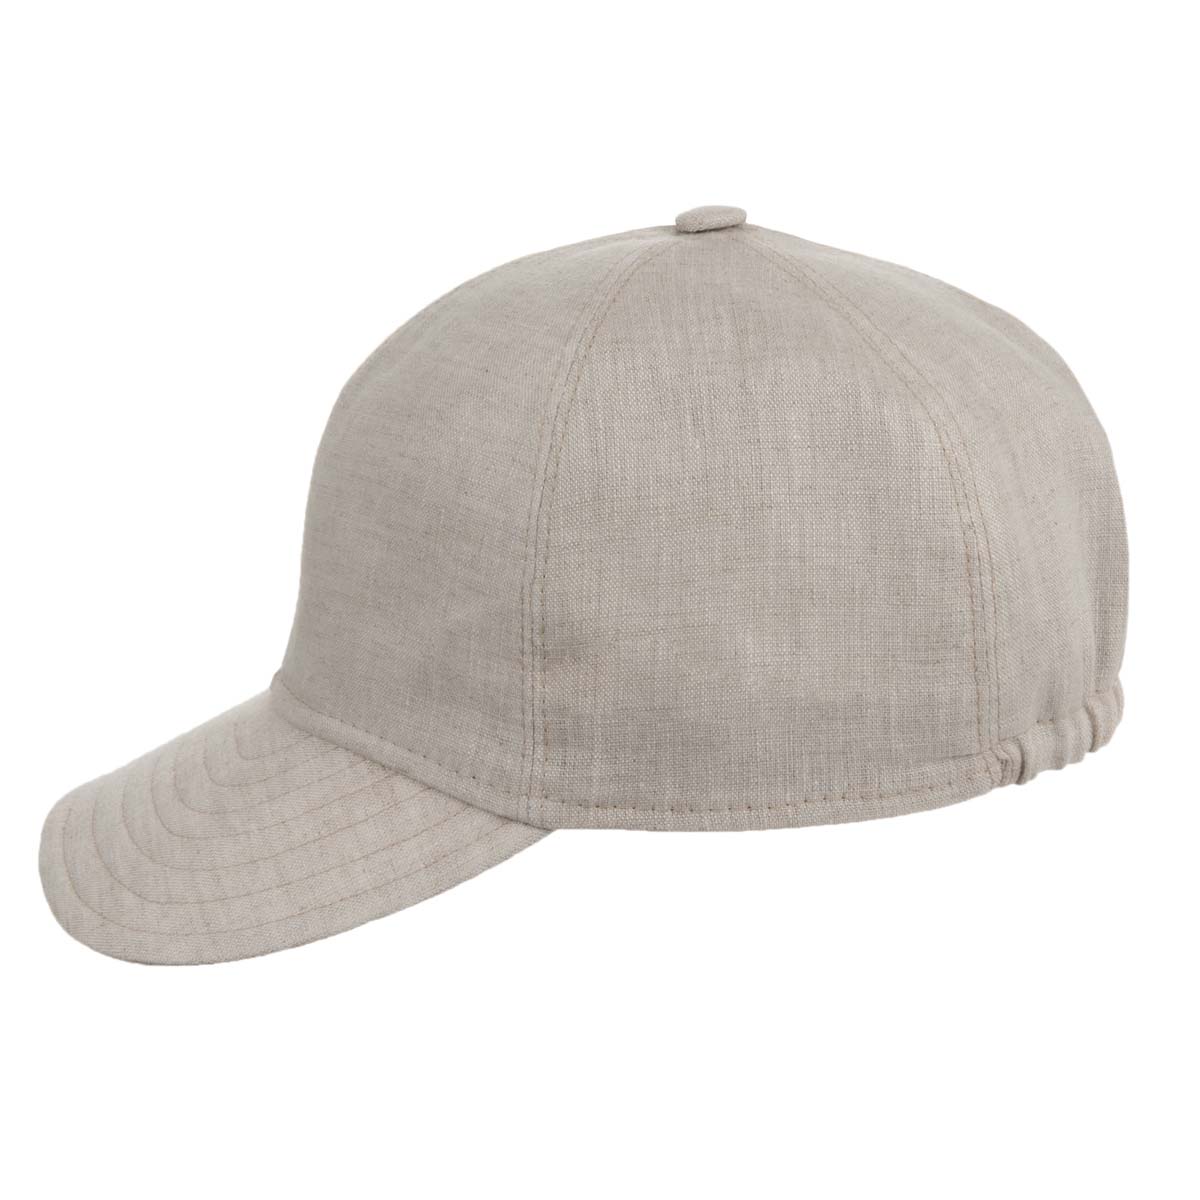 100% cotton basecap for man --> Online Hatshop for hats, caps ...